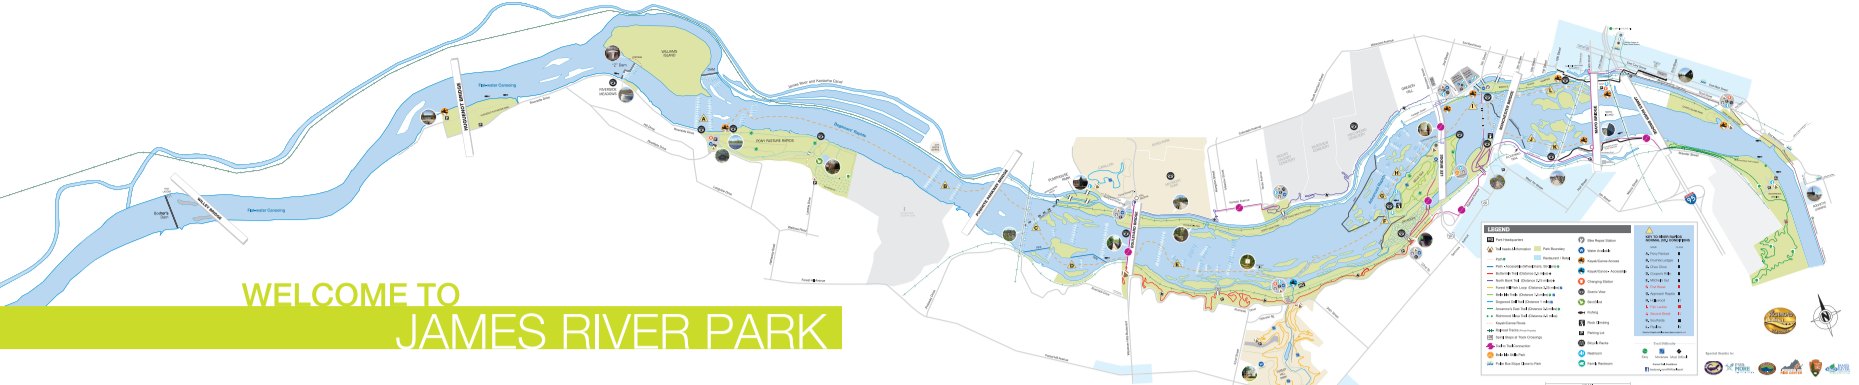 James River Park Map 2017